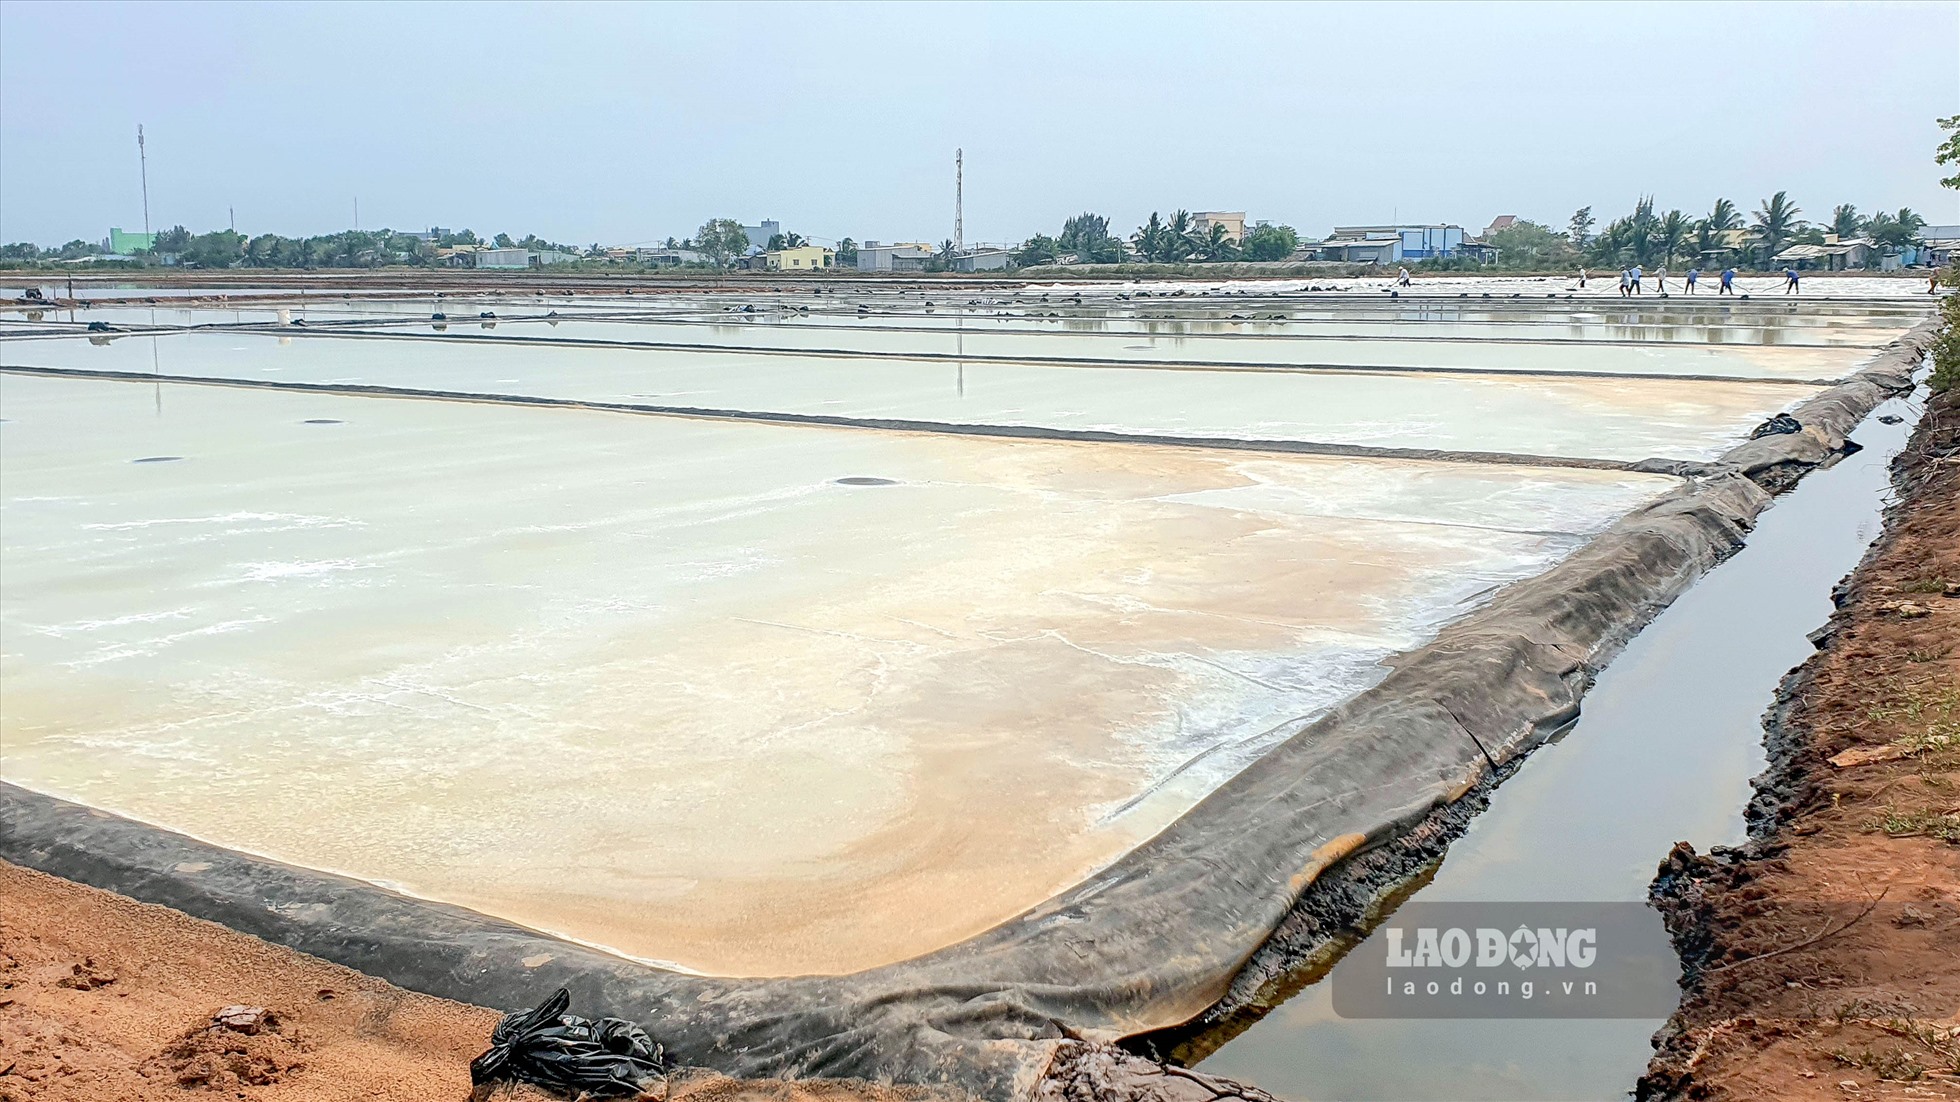 Nghề làm muối có mặt tại tỉnh Bạc Liêu hơn 100 năm nay. Hiện tại diện tích sản xuất muối toàn tỉnh Bạc Liêu gần 1.500 ha ở huyện Hòa Bình, Đông Hải.